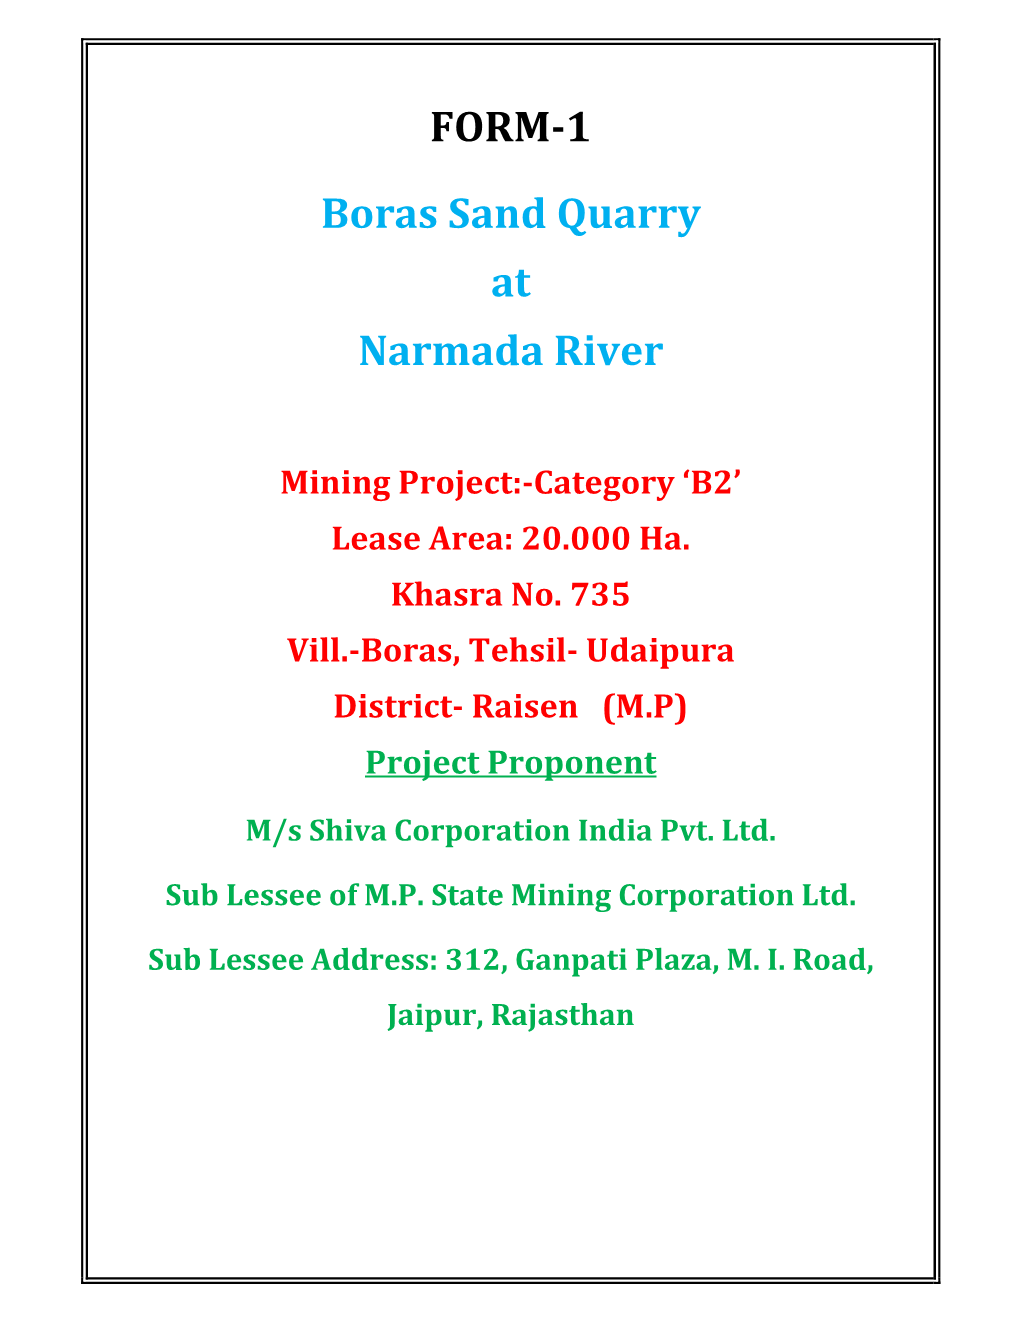 FORM-1 Boras Sand Quarry at Narmada River